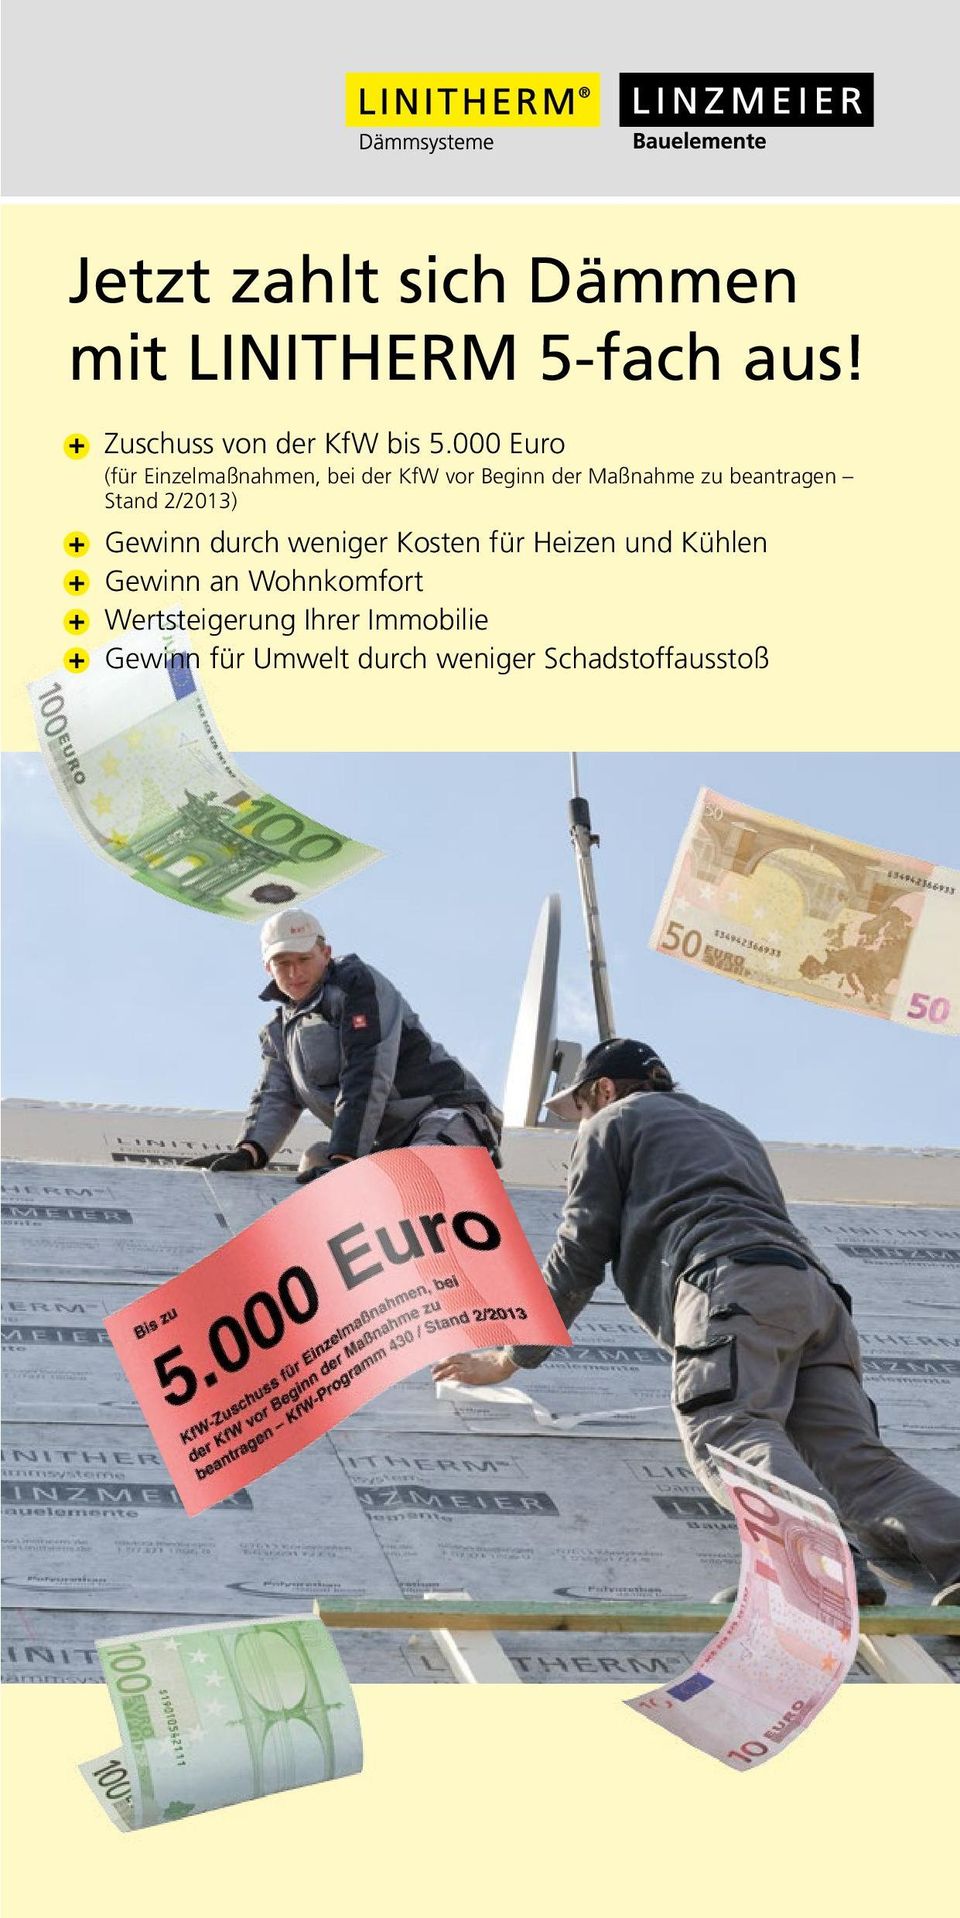 Stand 2/2013) + Gewinn durch weniger Kosten für Heizen und Kühlen + Gewinn an